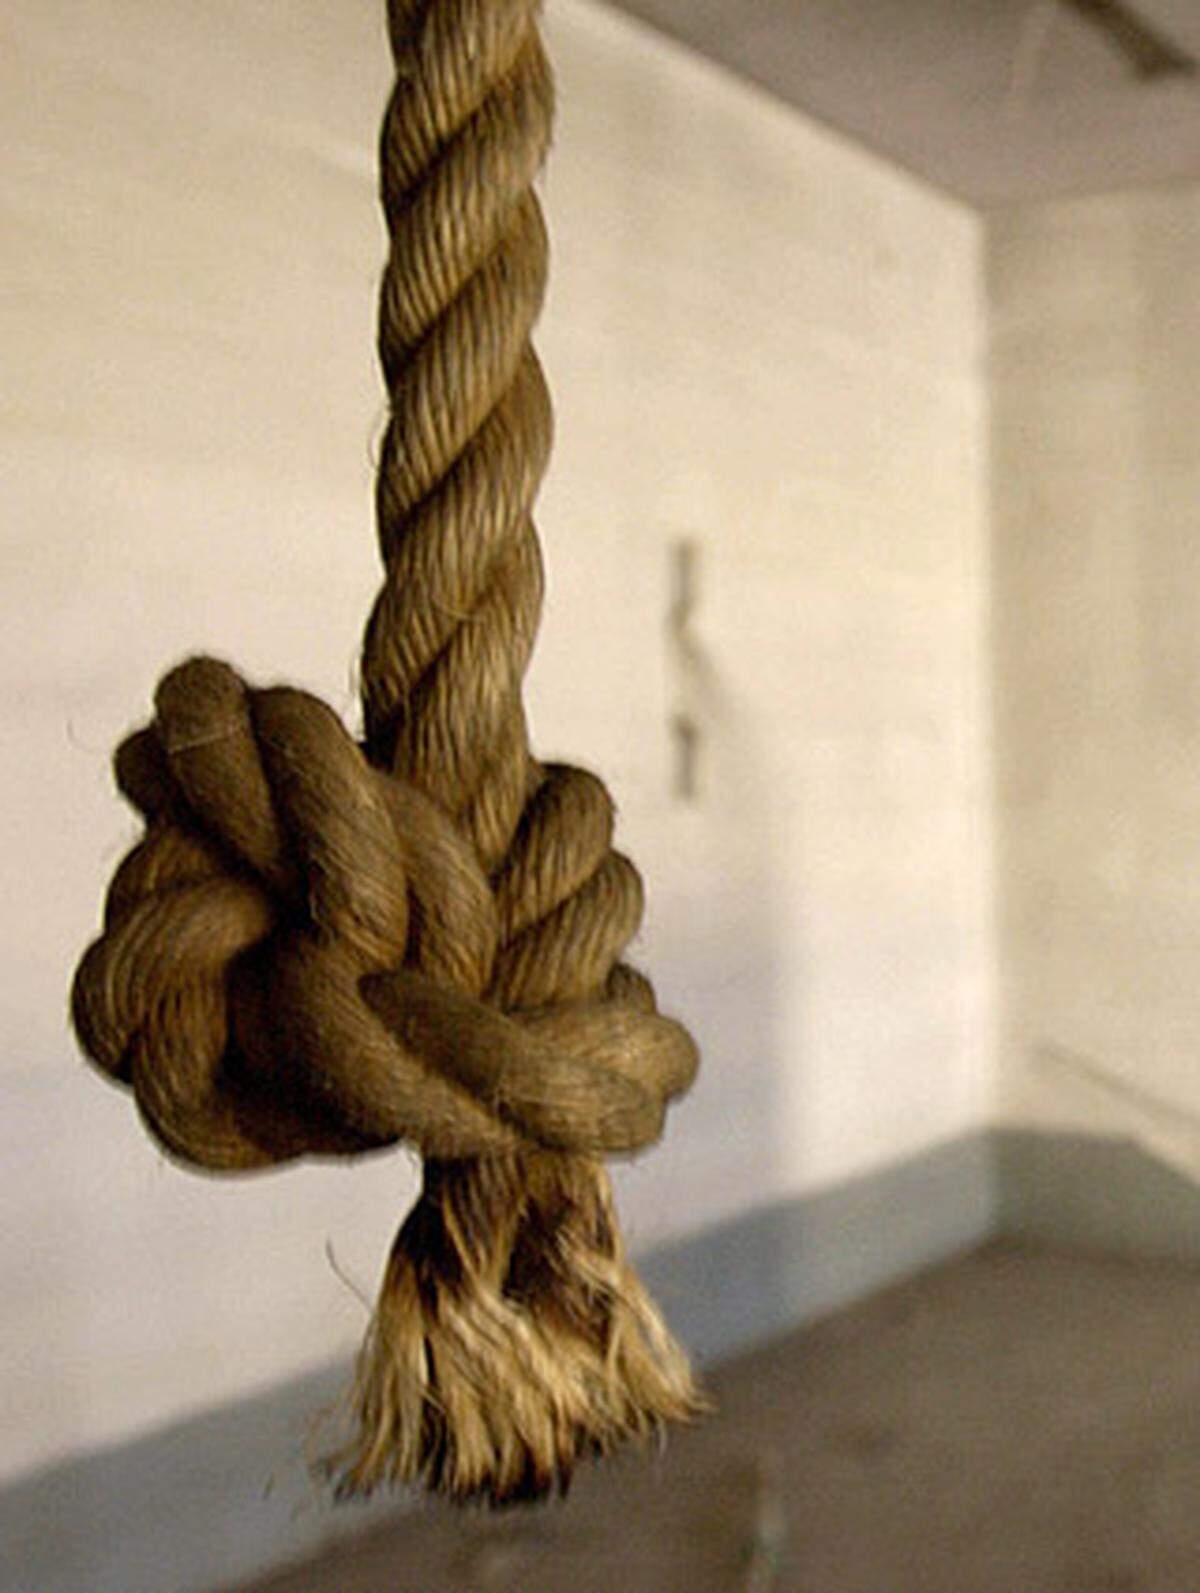 ...die Todesstrafe konnte von Volksgerichten bis 1955 und im Fall standesrechtlicher Verfahren bis 1968 verhängt werden. Die letzte Hinrichtung fand jedoch am 24. März 1950 statt. Bis dahin wurden seit Ende des Zweiten Weltkriegs 101 Todesurteile - davon 30 im Rahmen der Volksgerichte - verhängt und 46 exekutiert.